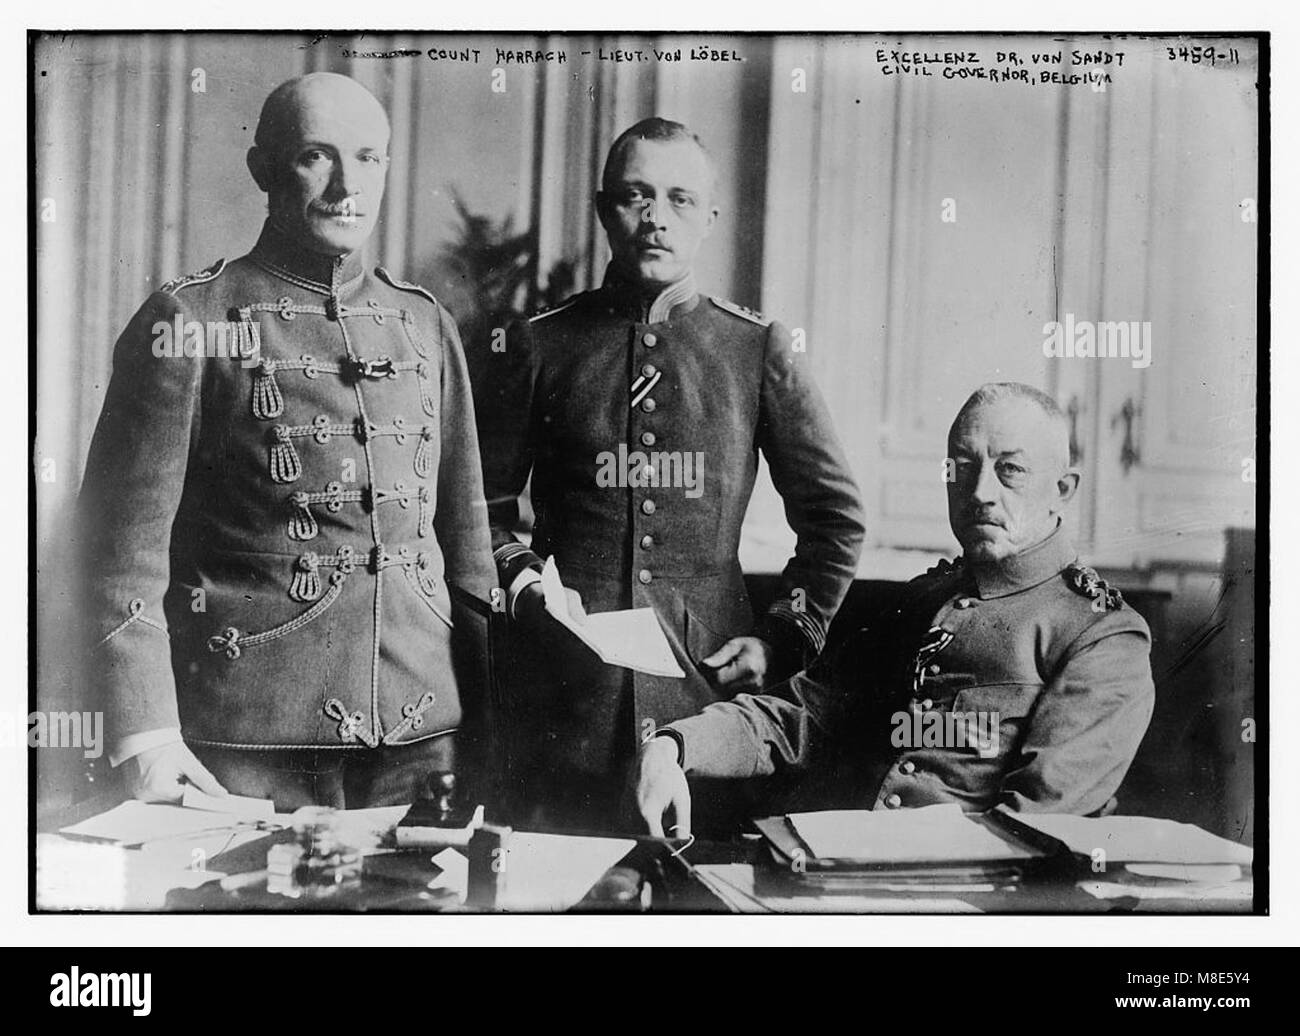 Count Harrach - Lt. Von Lobel - Excellenz Dr. Von Sandt, Civil Governor Belgium LCCN2014698928 Stock Photo